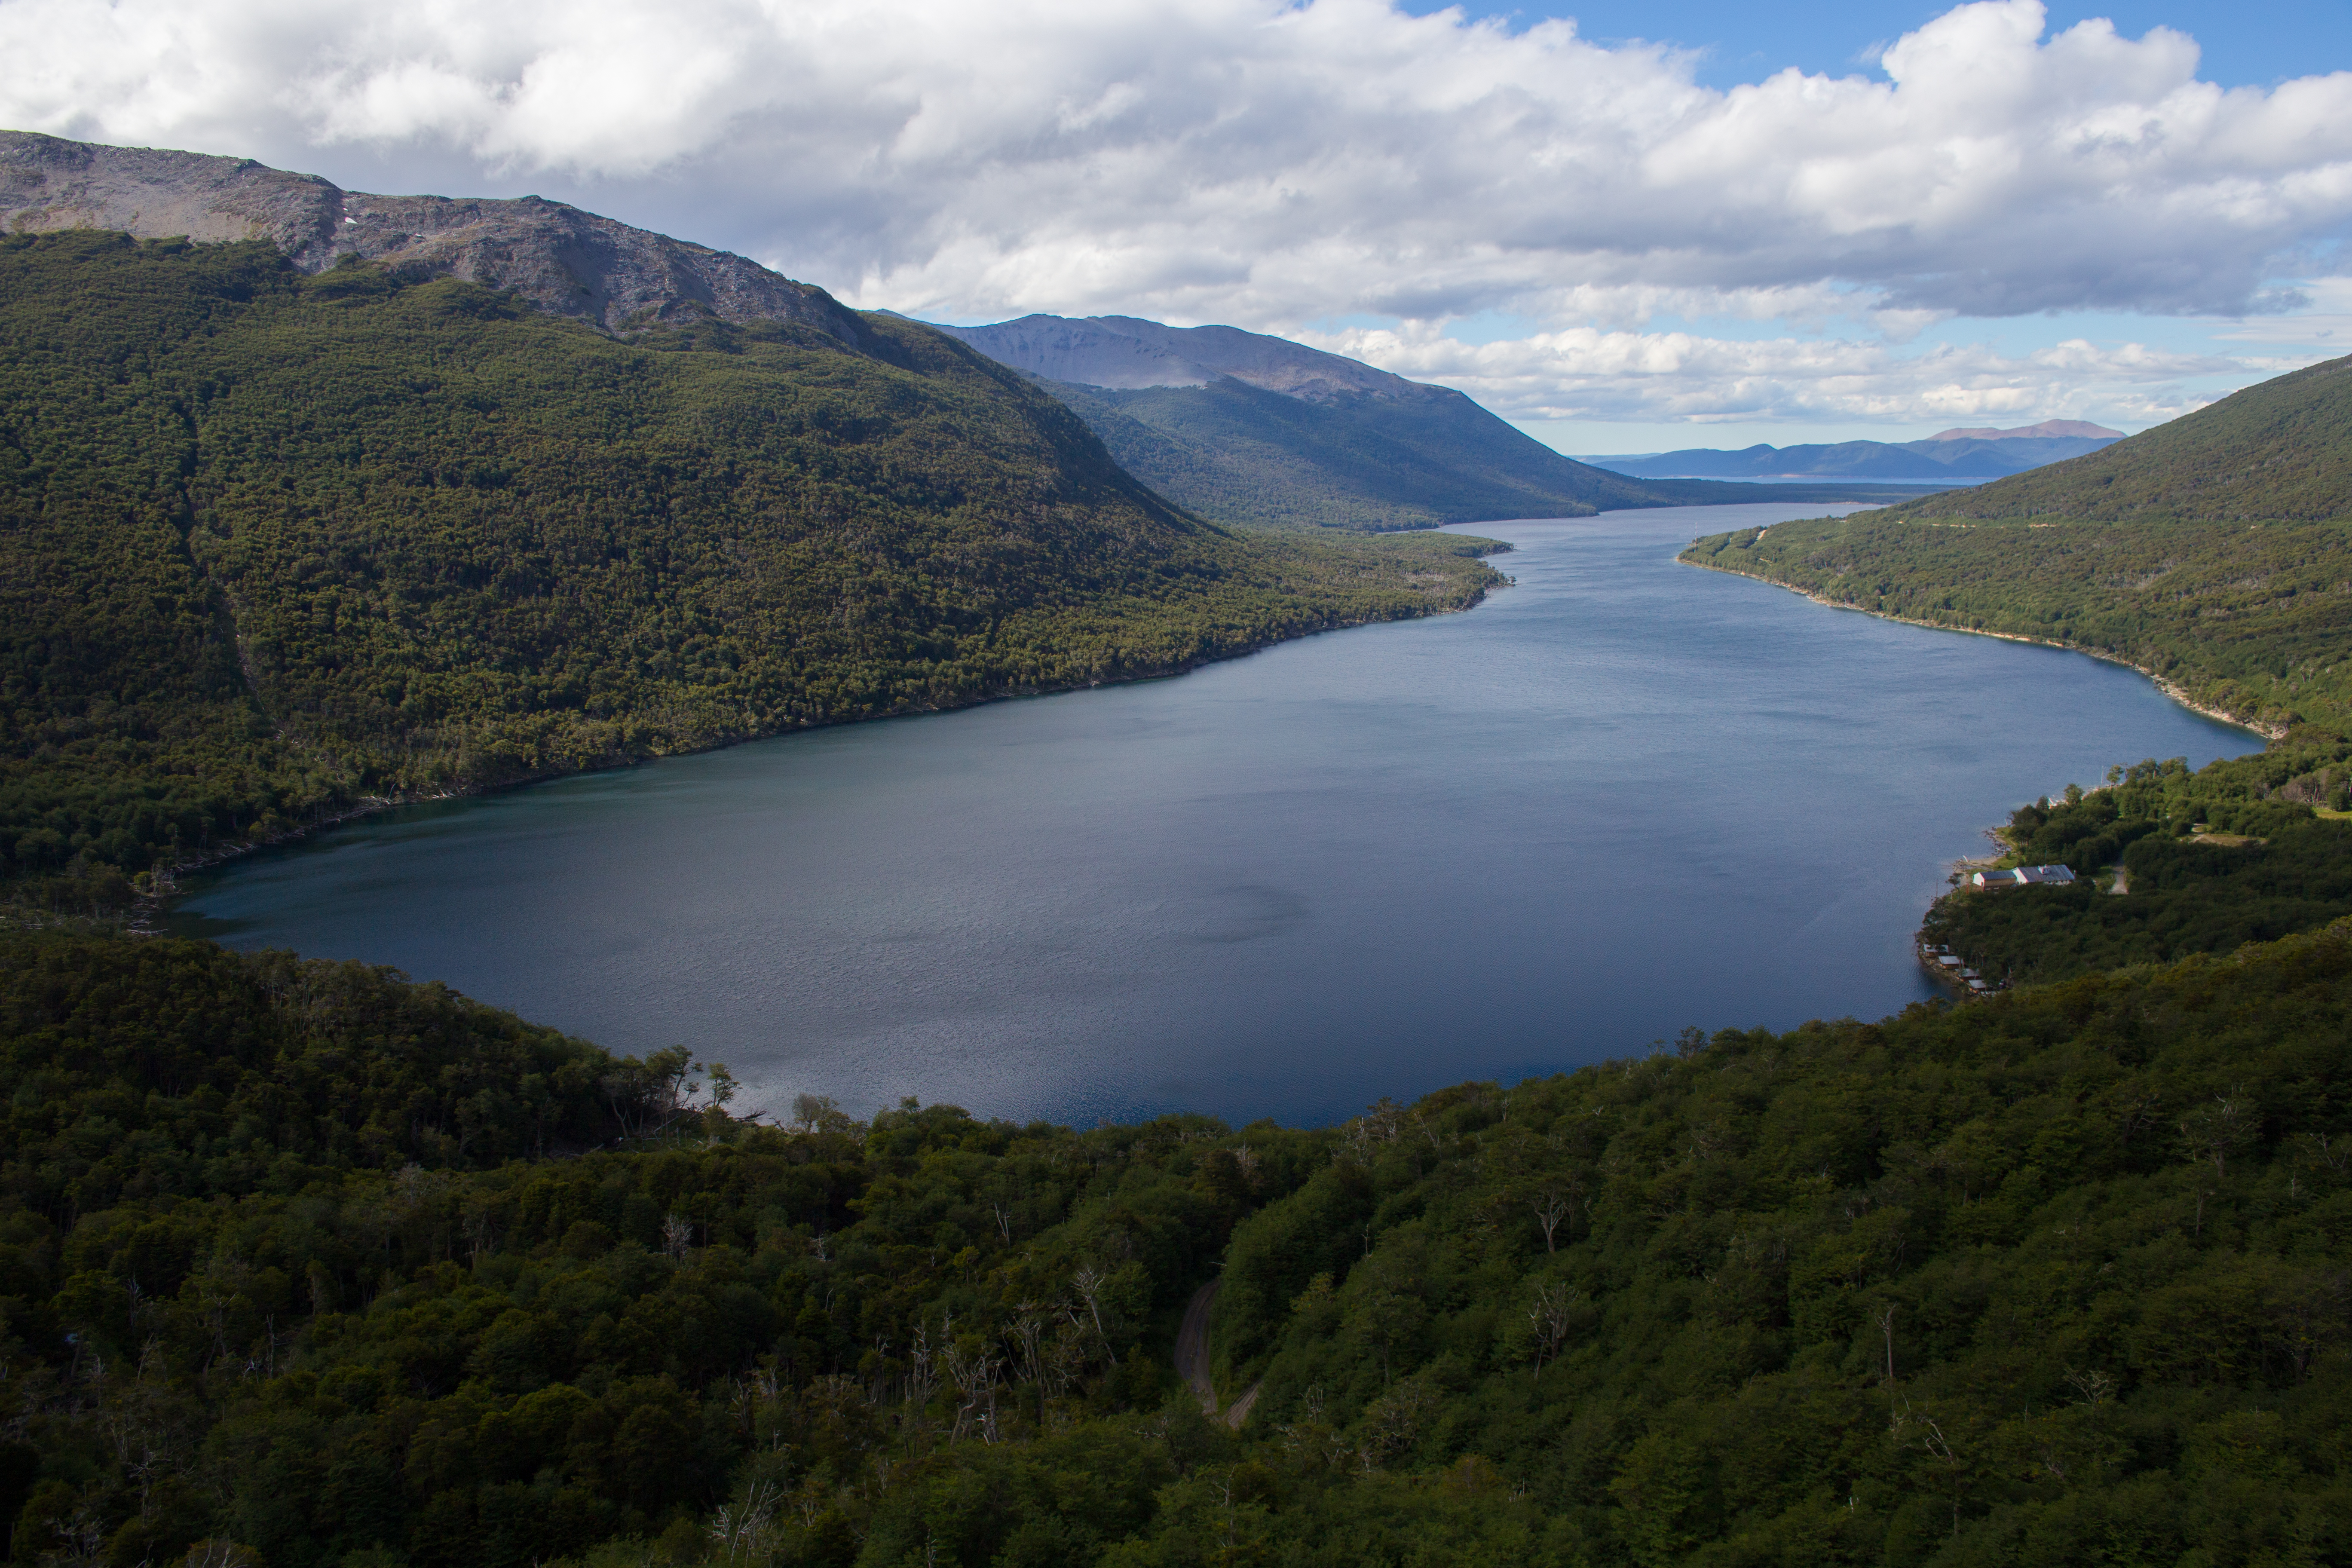 Lake Fagnano Lake - Tierra del Fuego view, Argentina